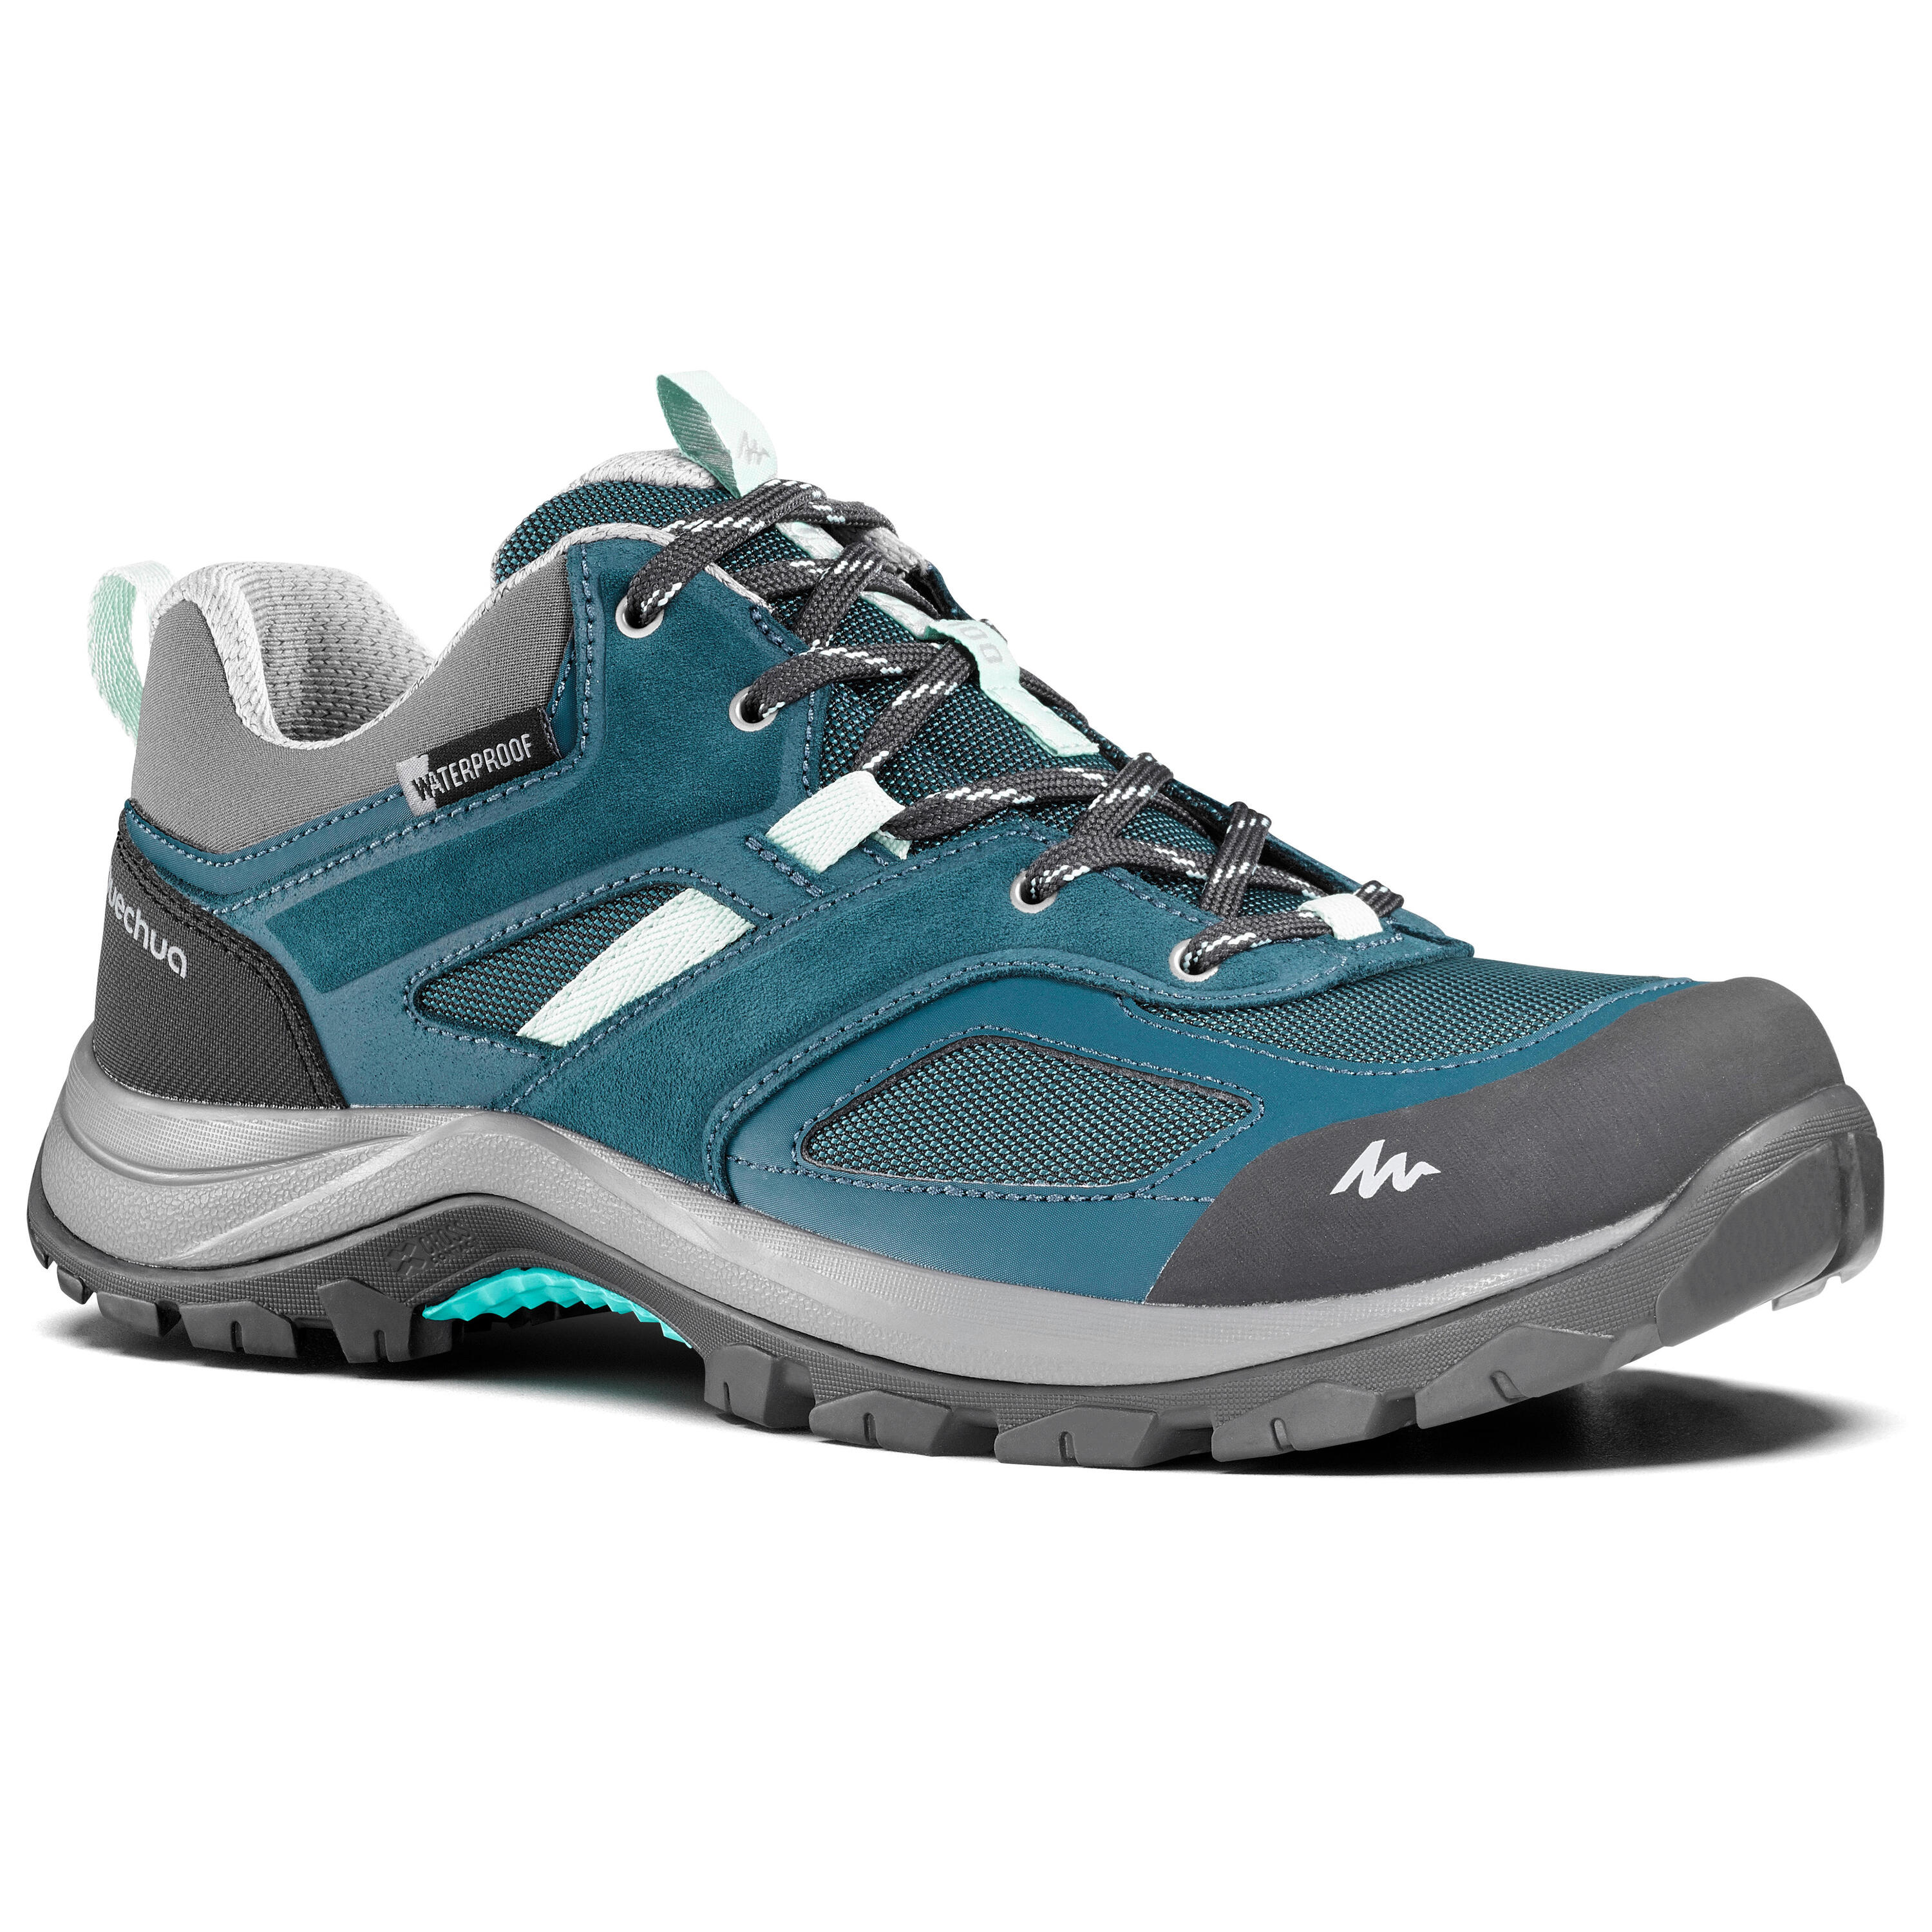 QUECHUA Women's waterproof mountain walking shoes MH100 - Turquoise